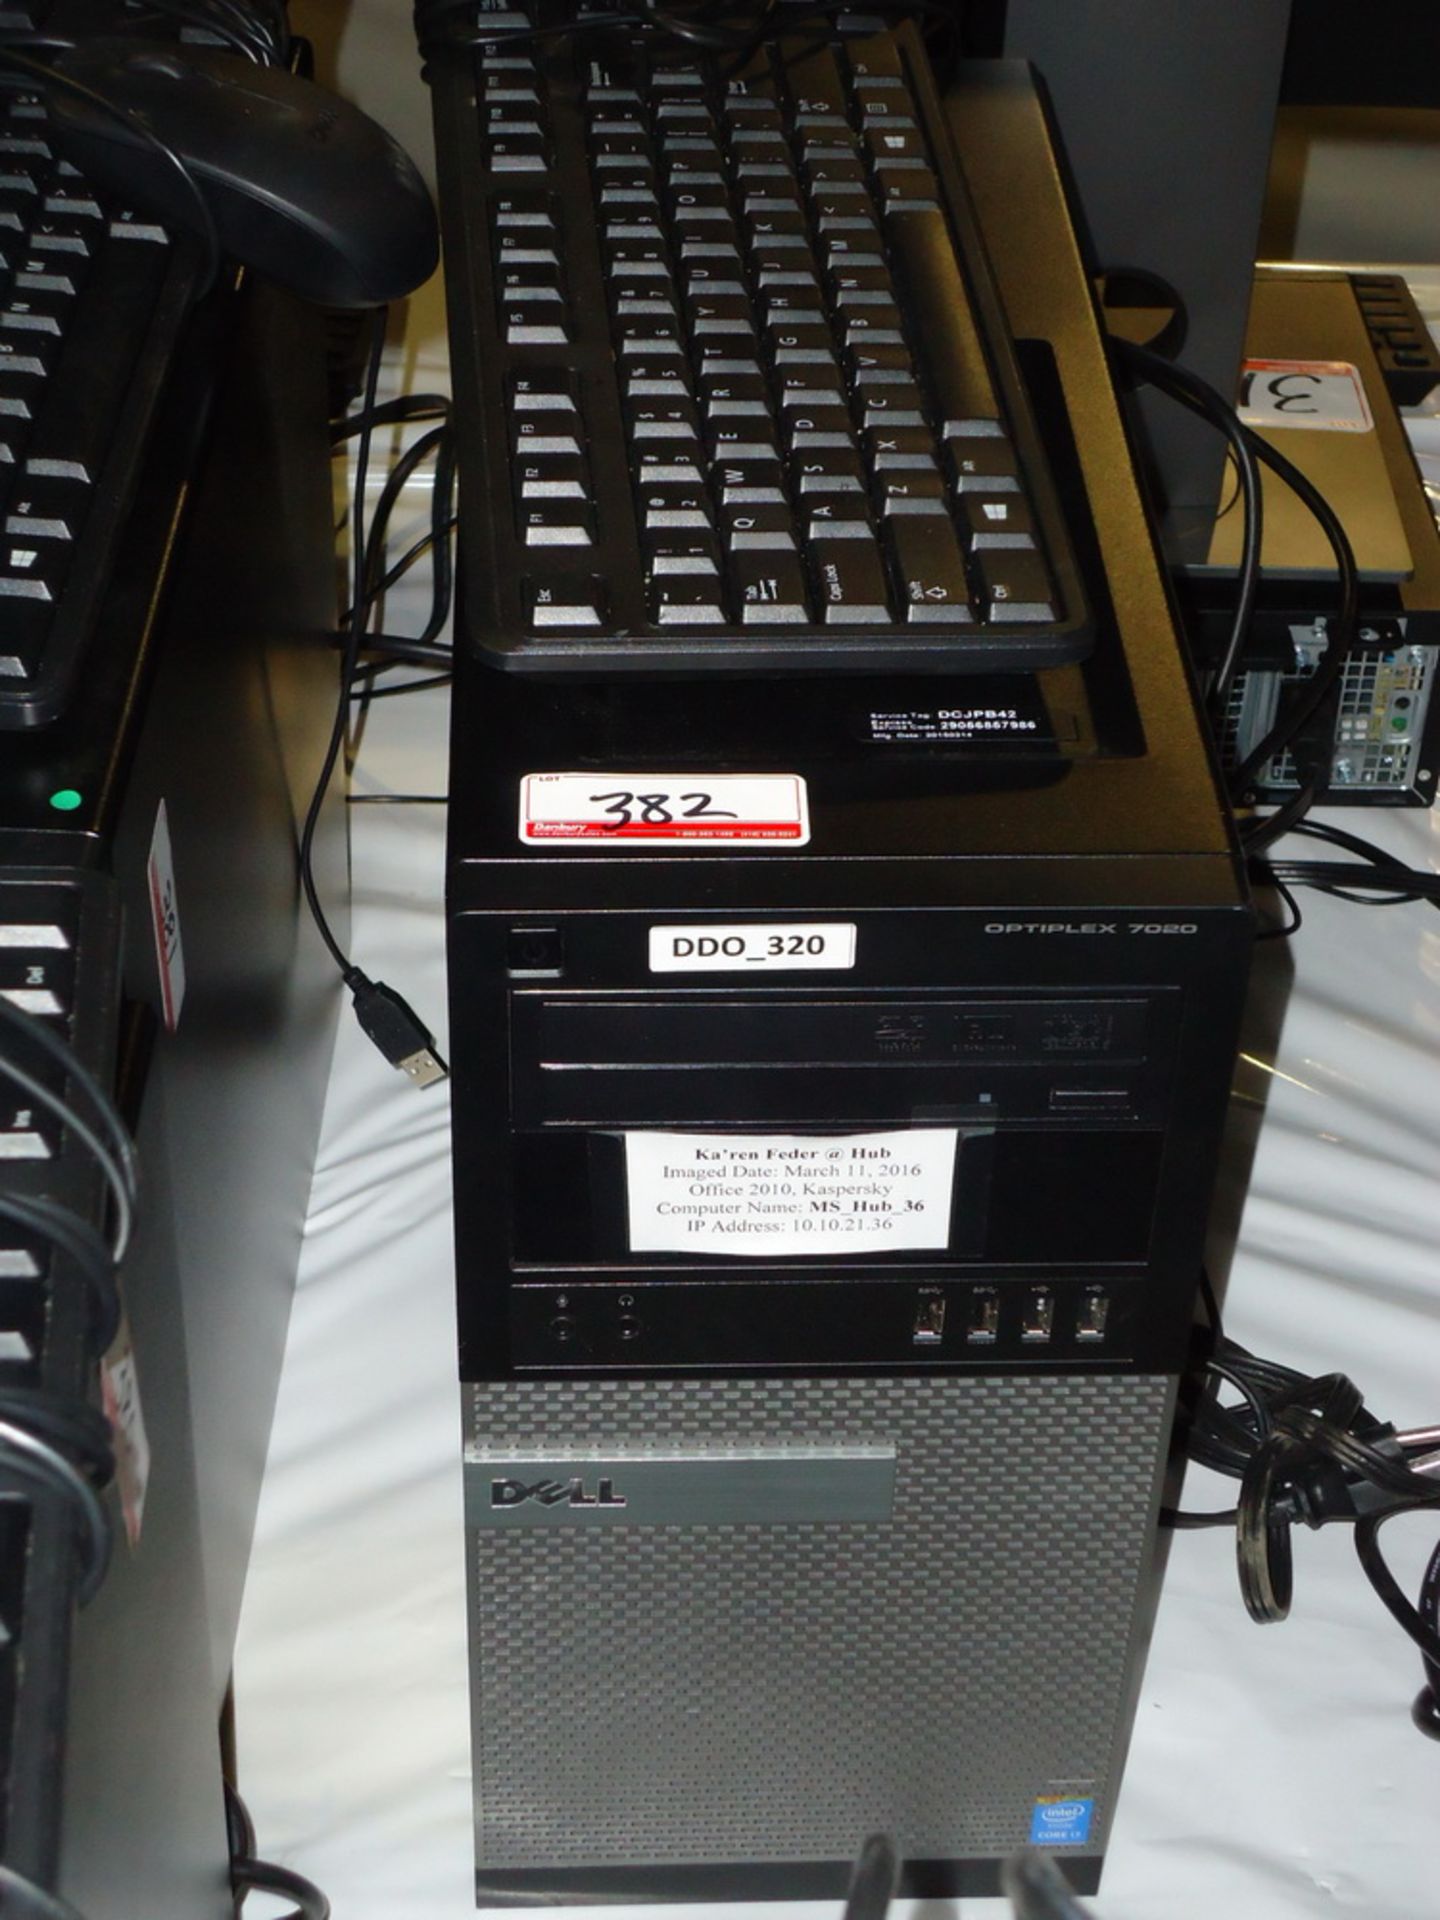 2015 DELL OPTIPLEX 7020 TOWER PC W/ INTEL QUAD CORE I7 4790 3.60GHZ PROCESSOR, 8GB RAM, 500 GB